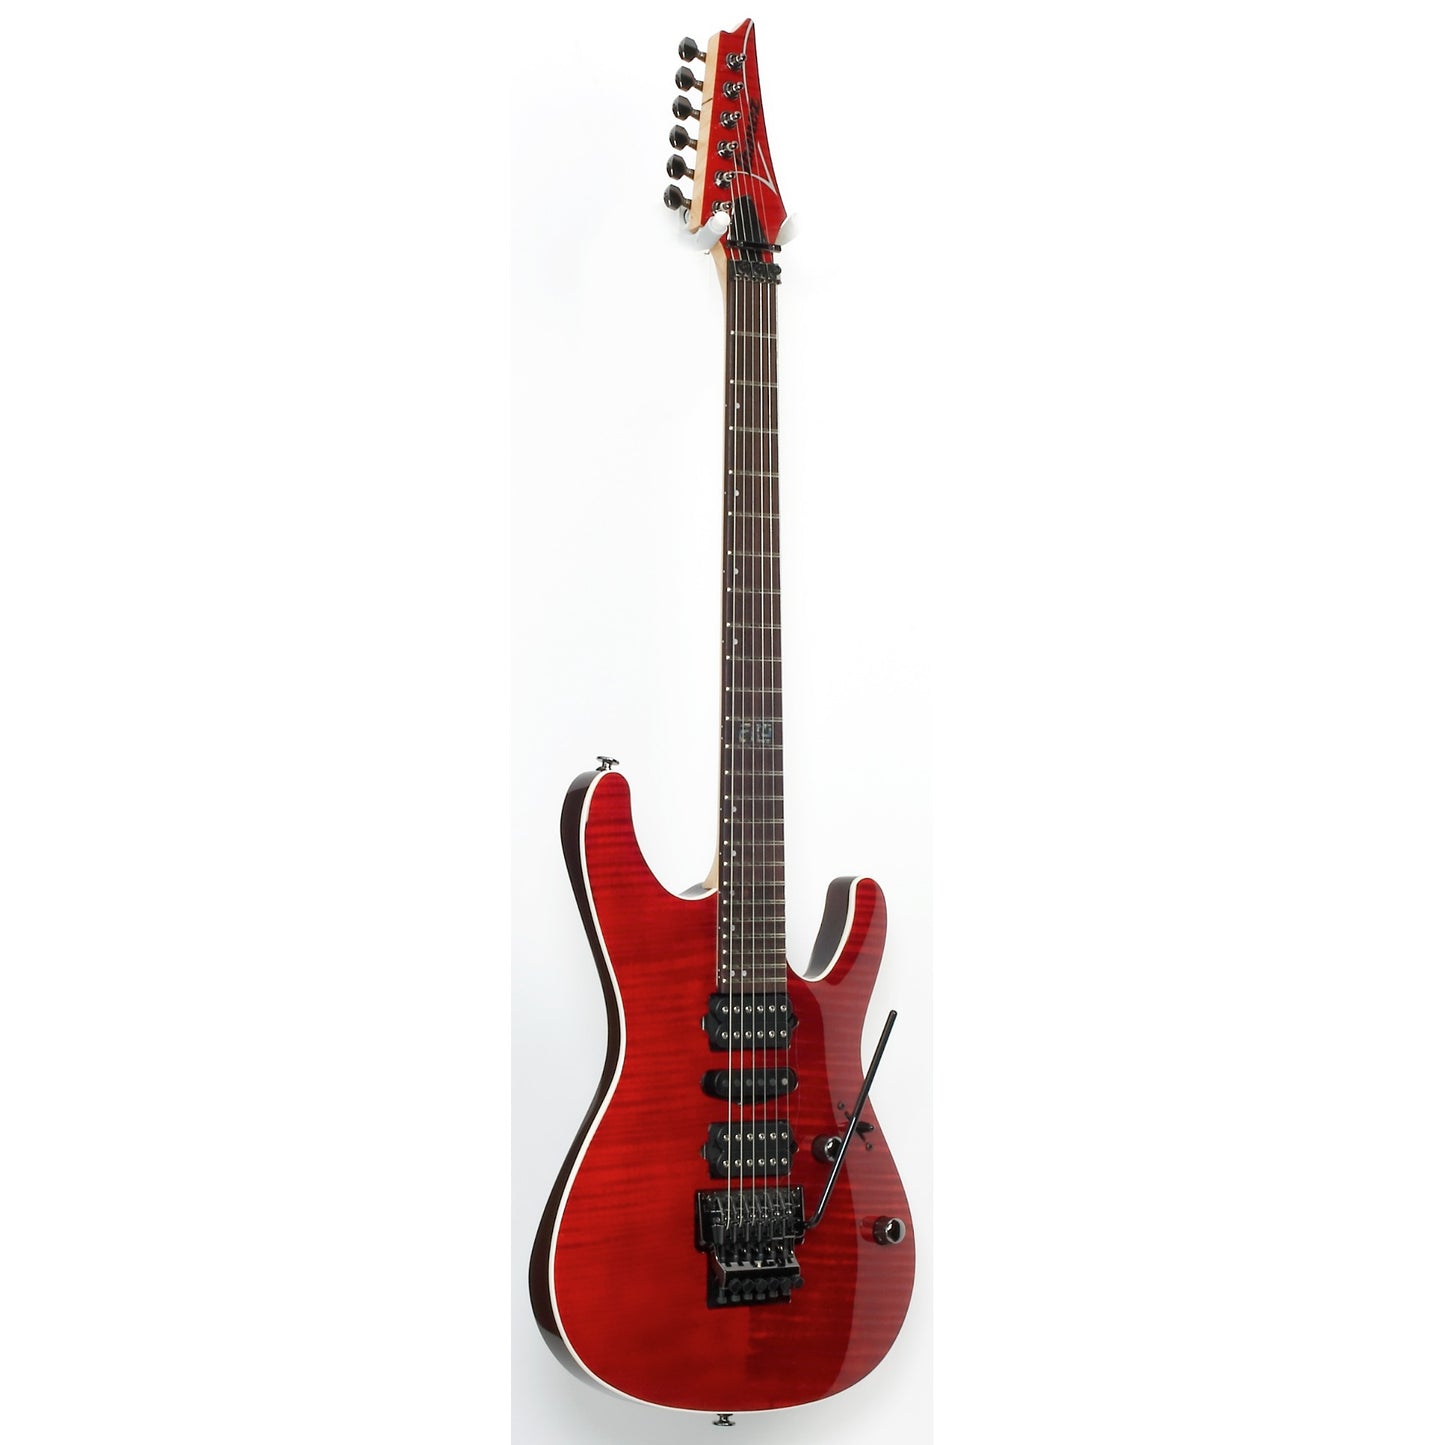 Ibanez KIKO100 Kiko Loureiro Signature Electric Guitar - Transparent Ruby Red